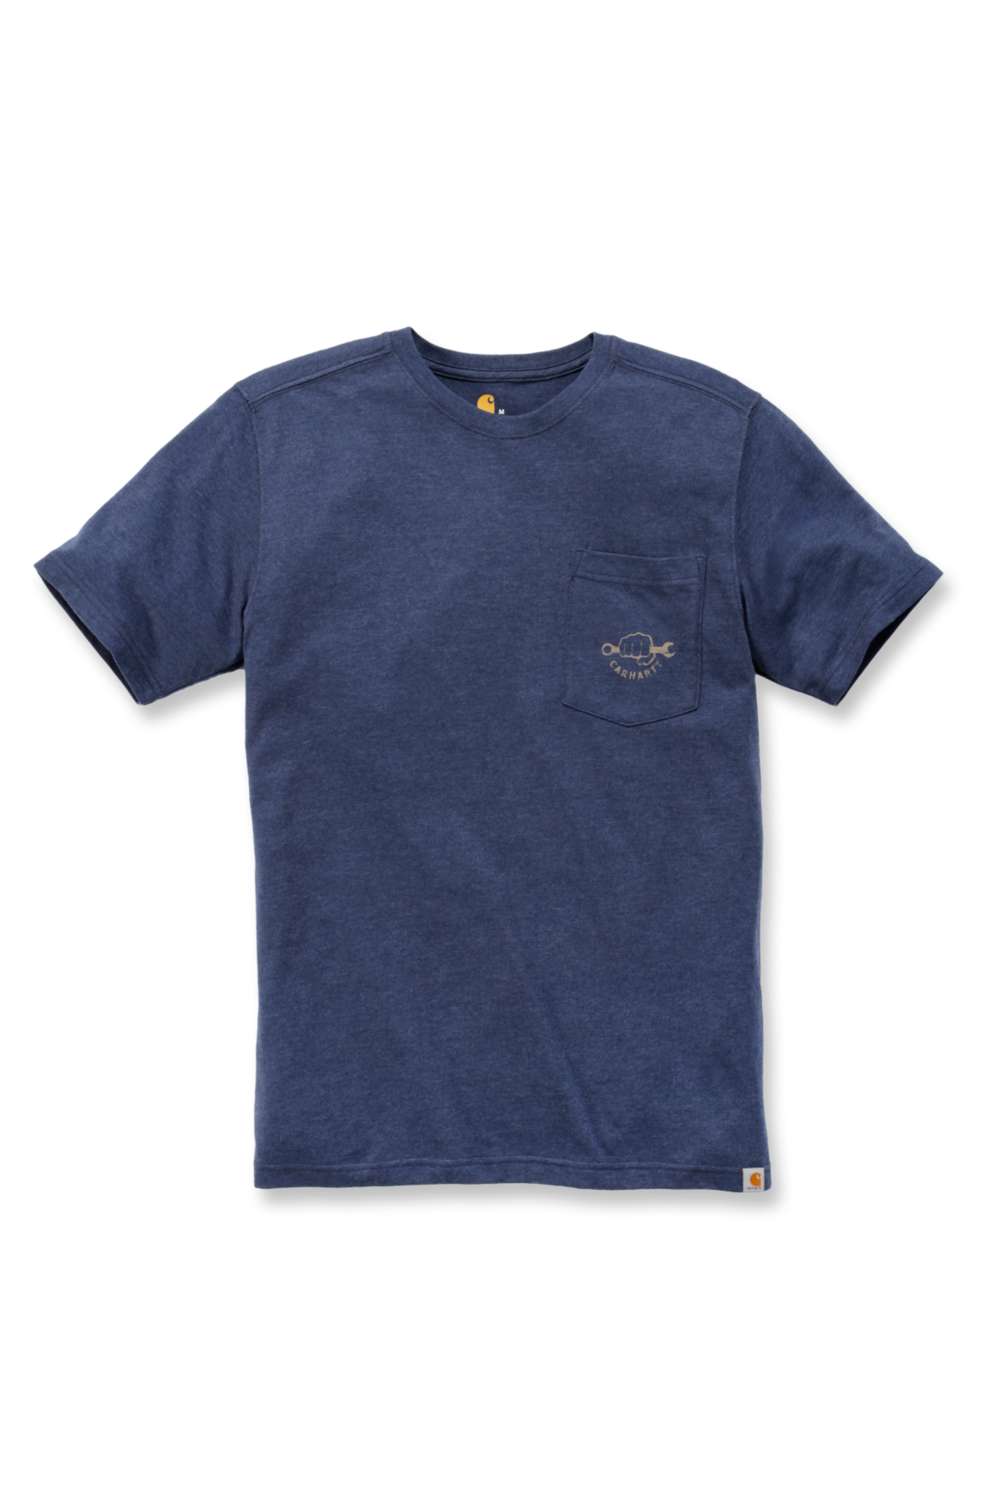 T-Shirt mit Tasche für Herren aus robuster Baumwollmischung mit Carhartt-Aufdruck.